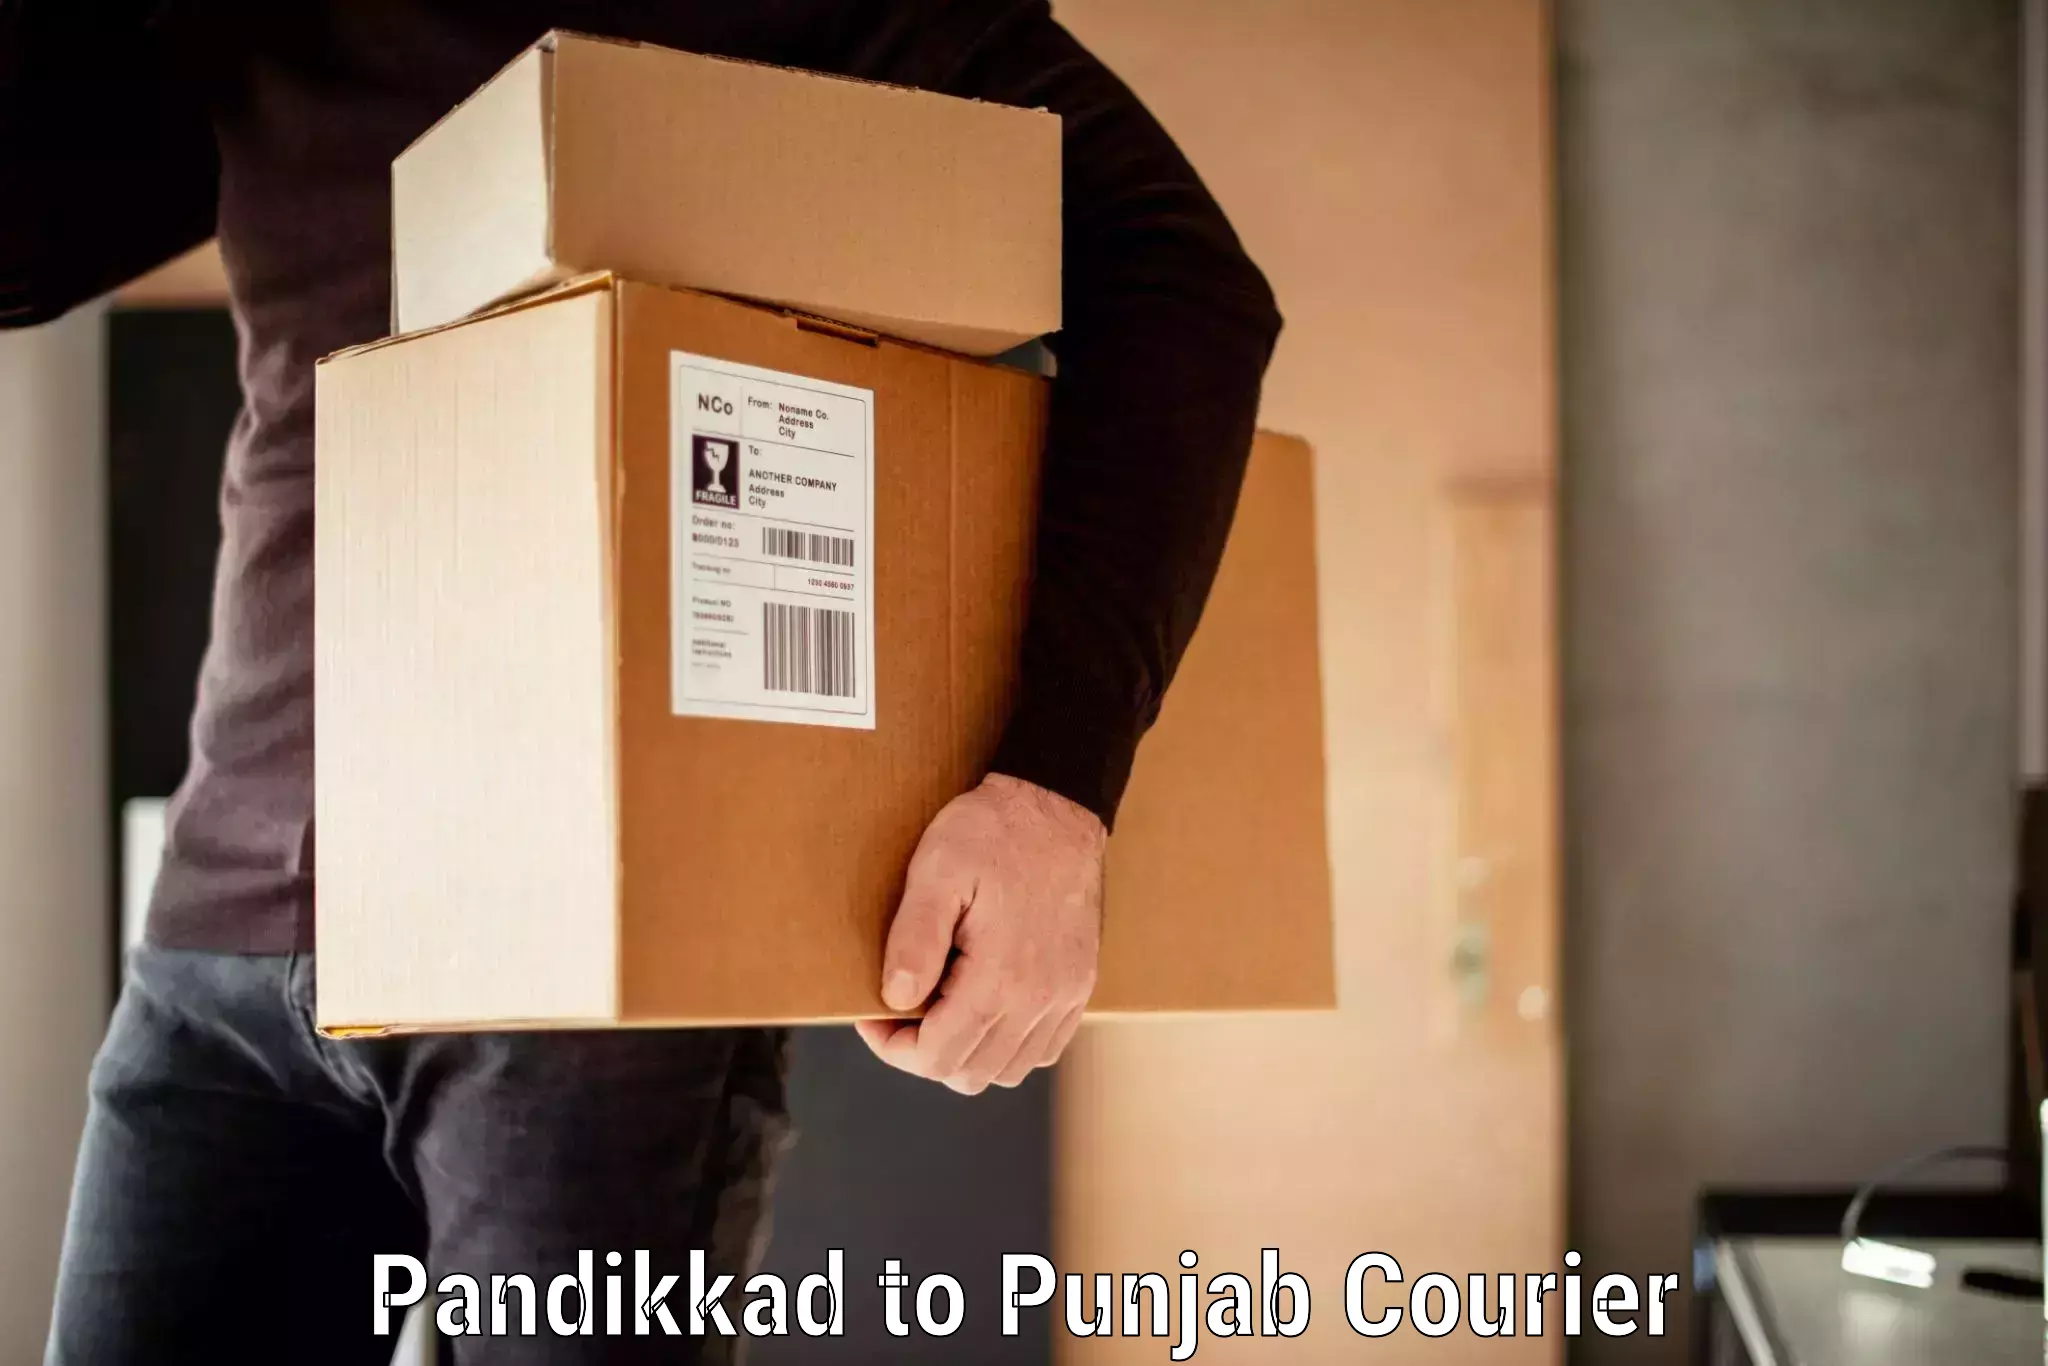 Efficient baggage transport in Pandikkad to Punjab